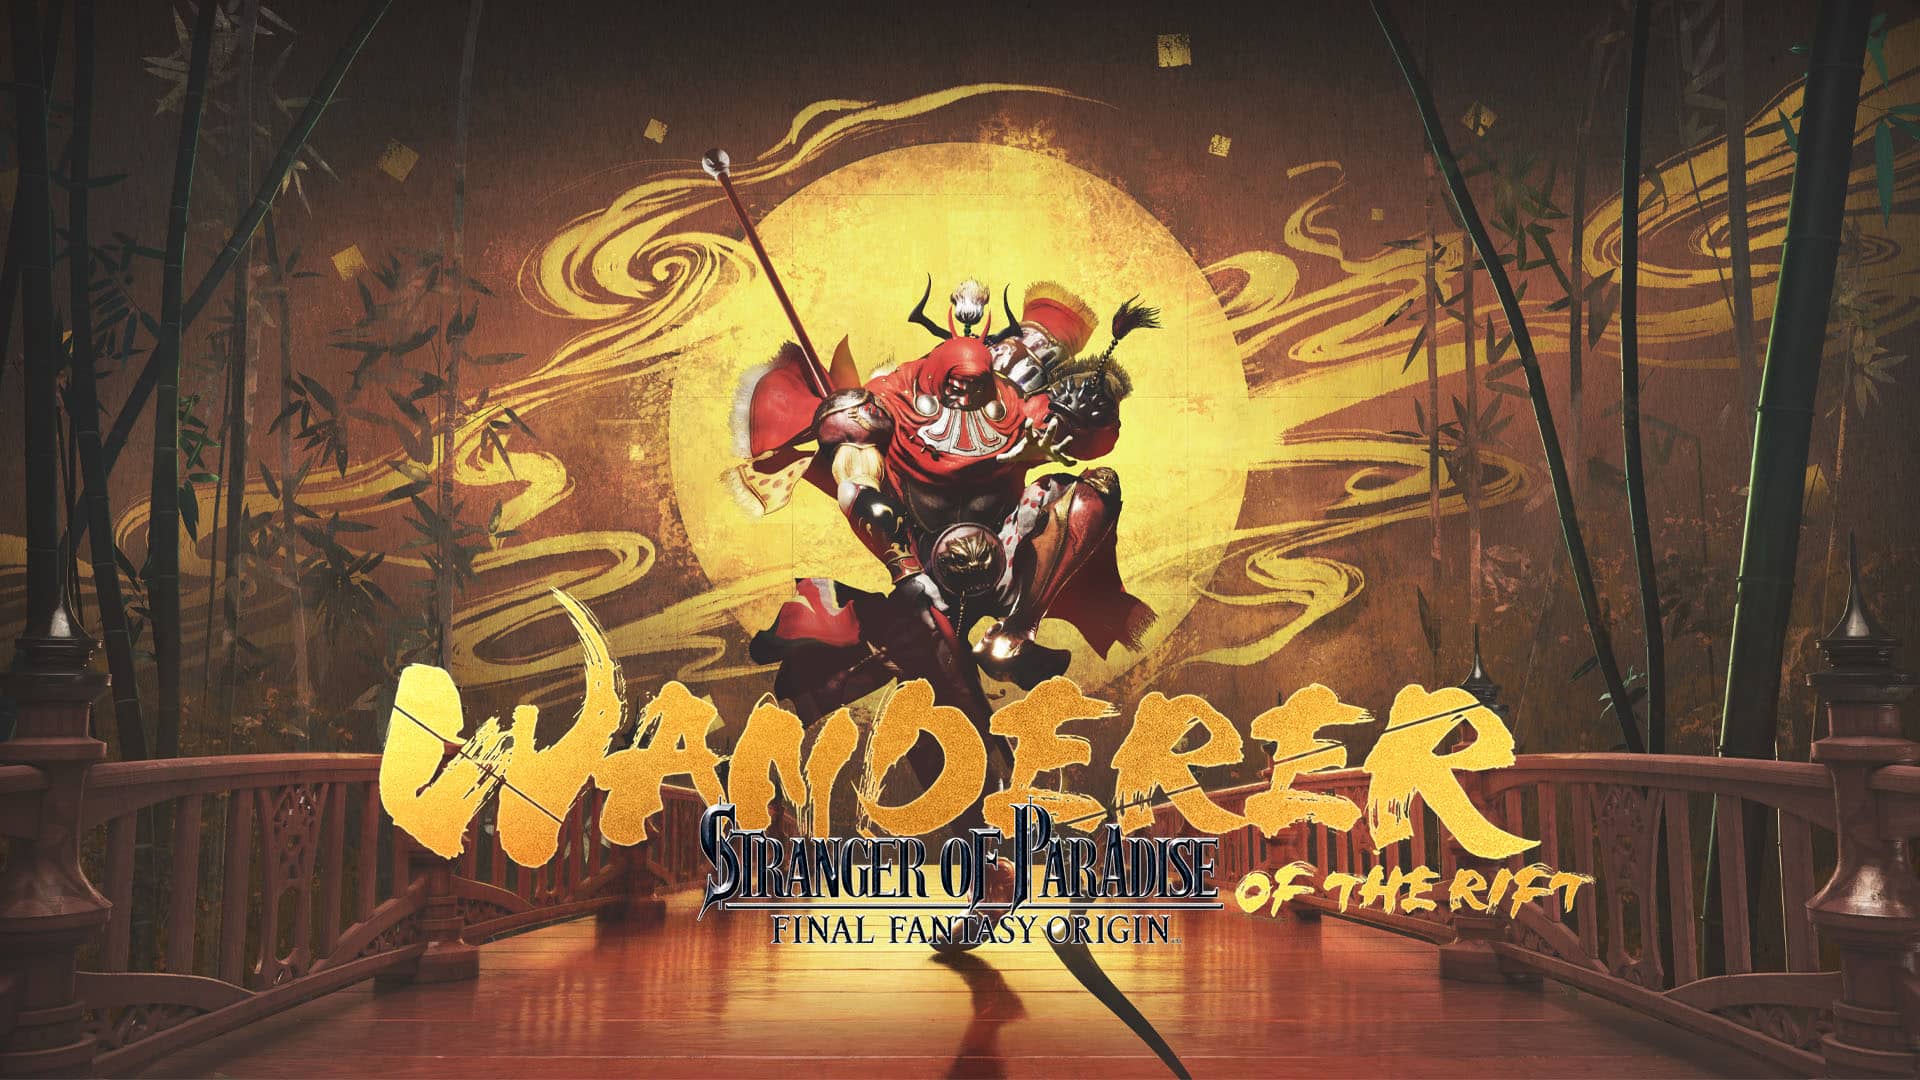 Stranger of Paradise Final Fantasy Origin - Wanderer of the Rift Launch Trailer Released 1